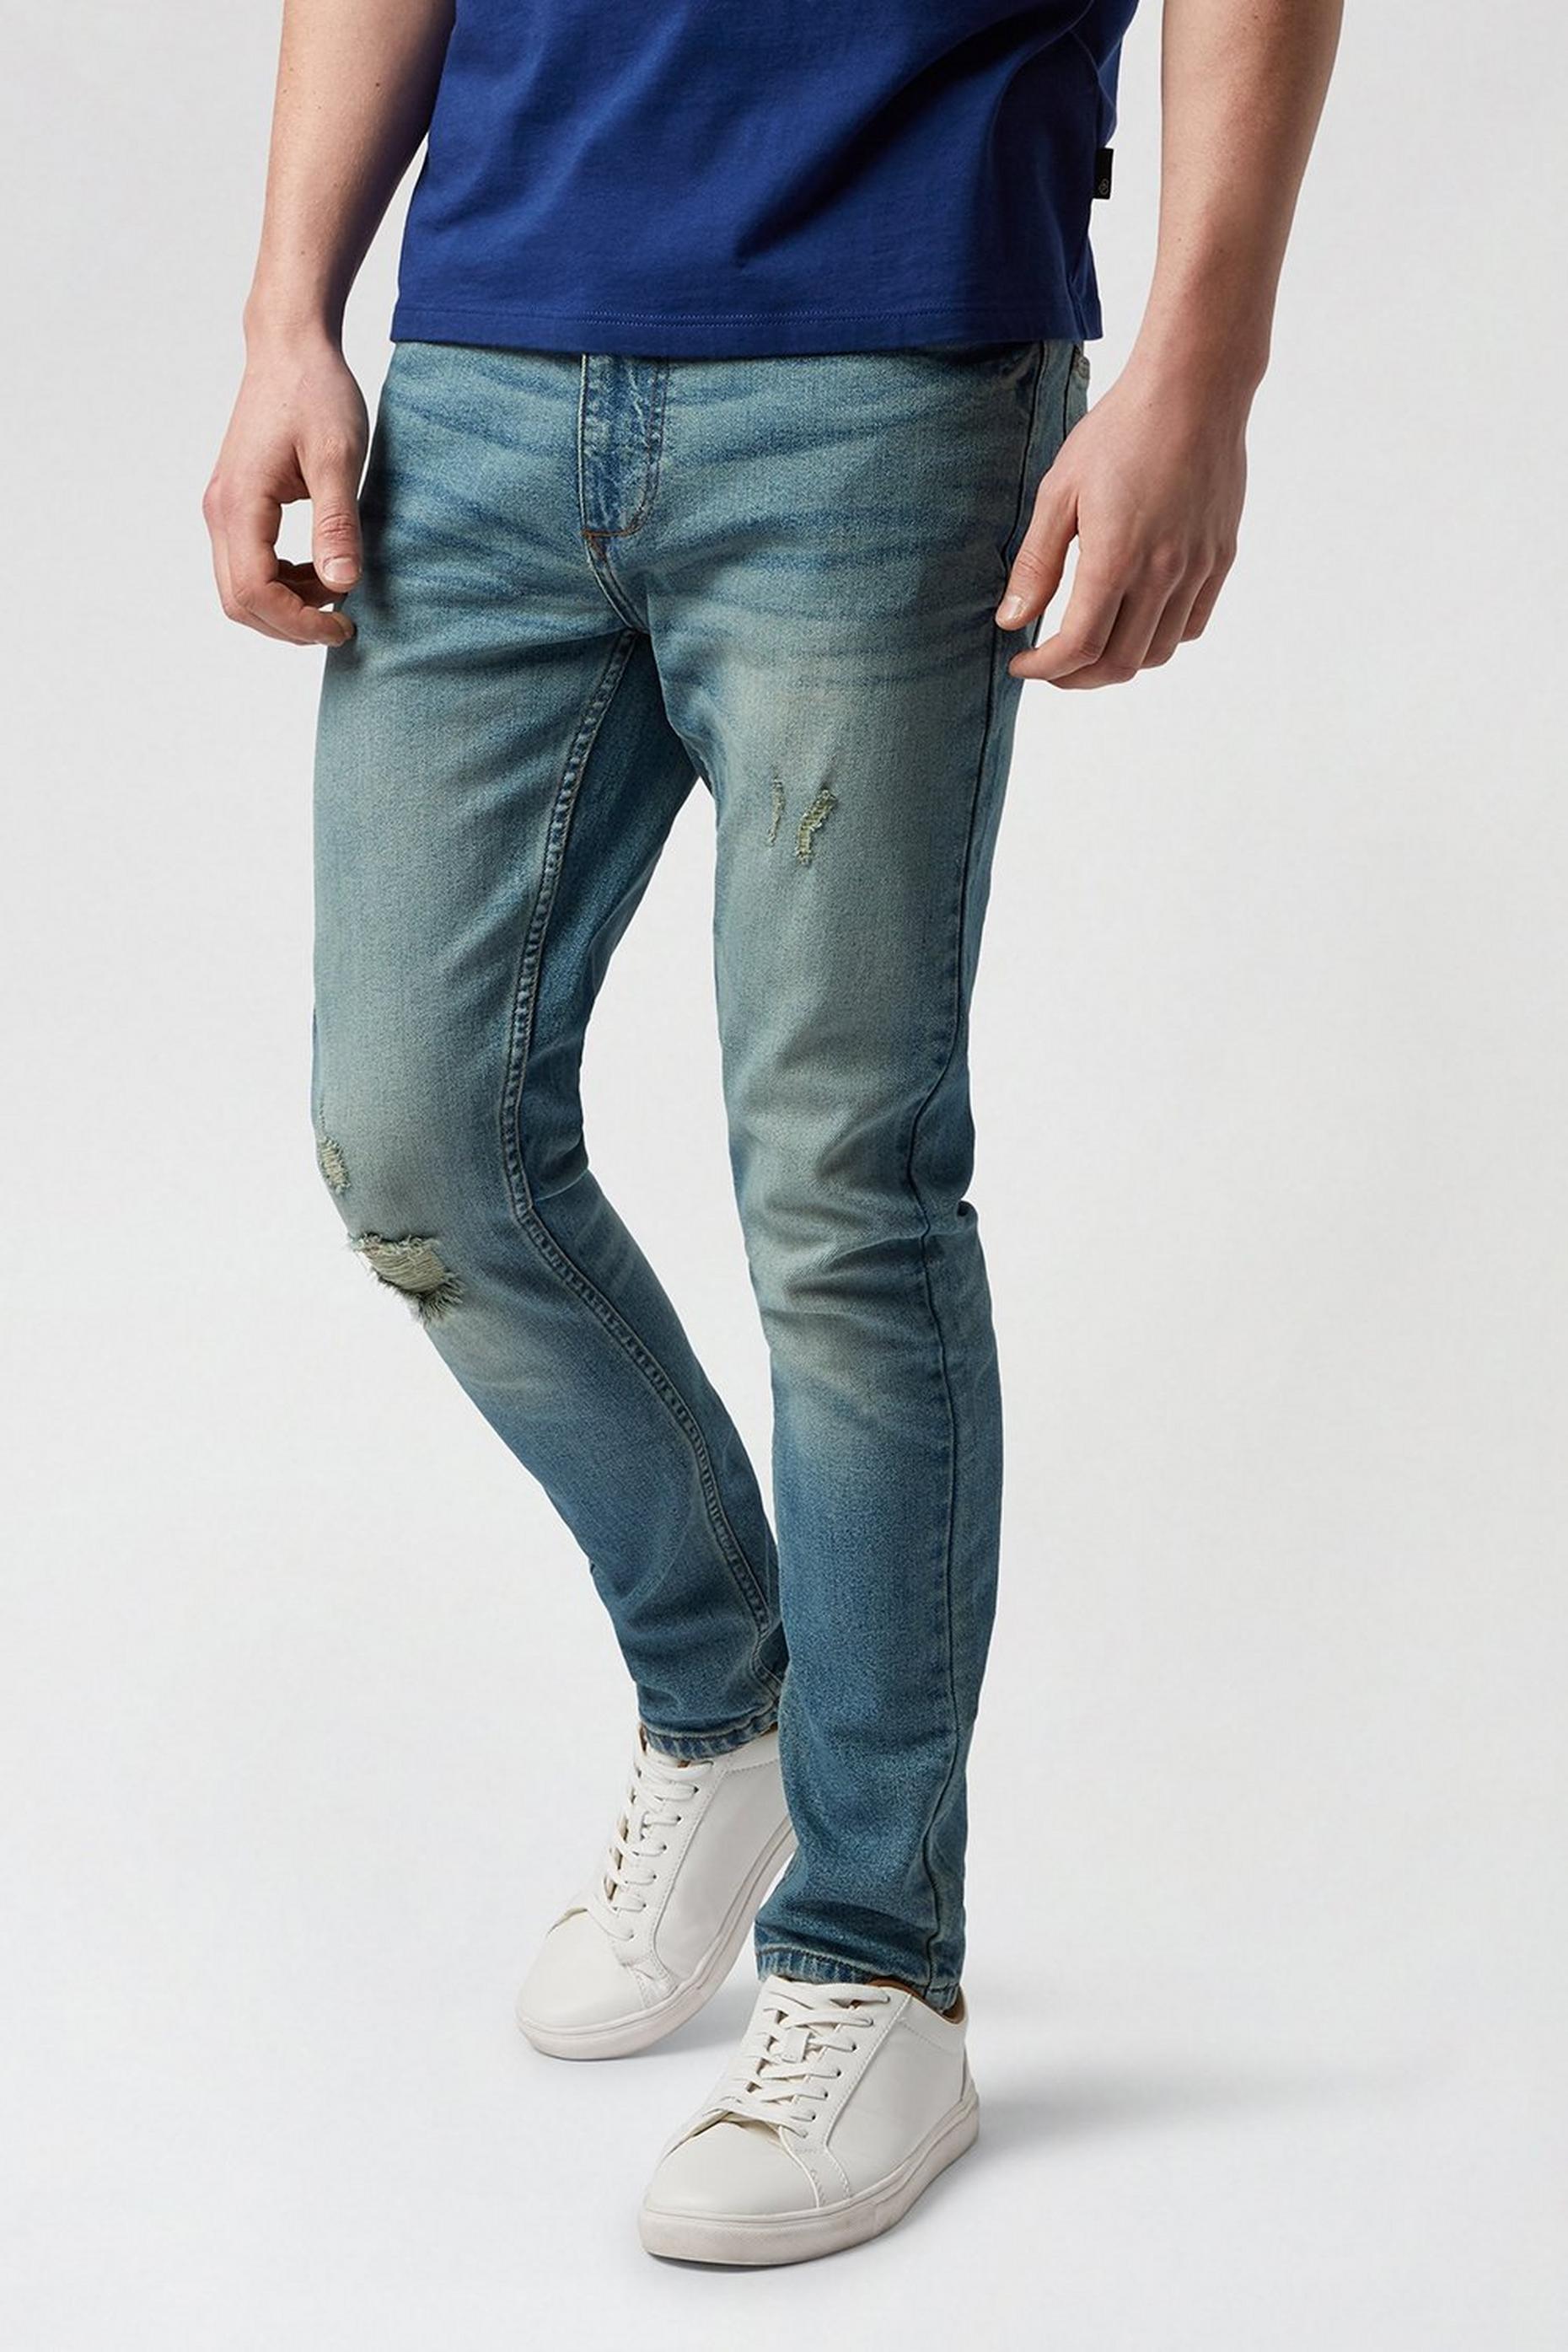 Men's Jeans Sale | Denim Jeans Sale | Burton